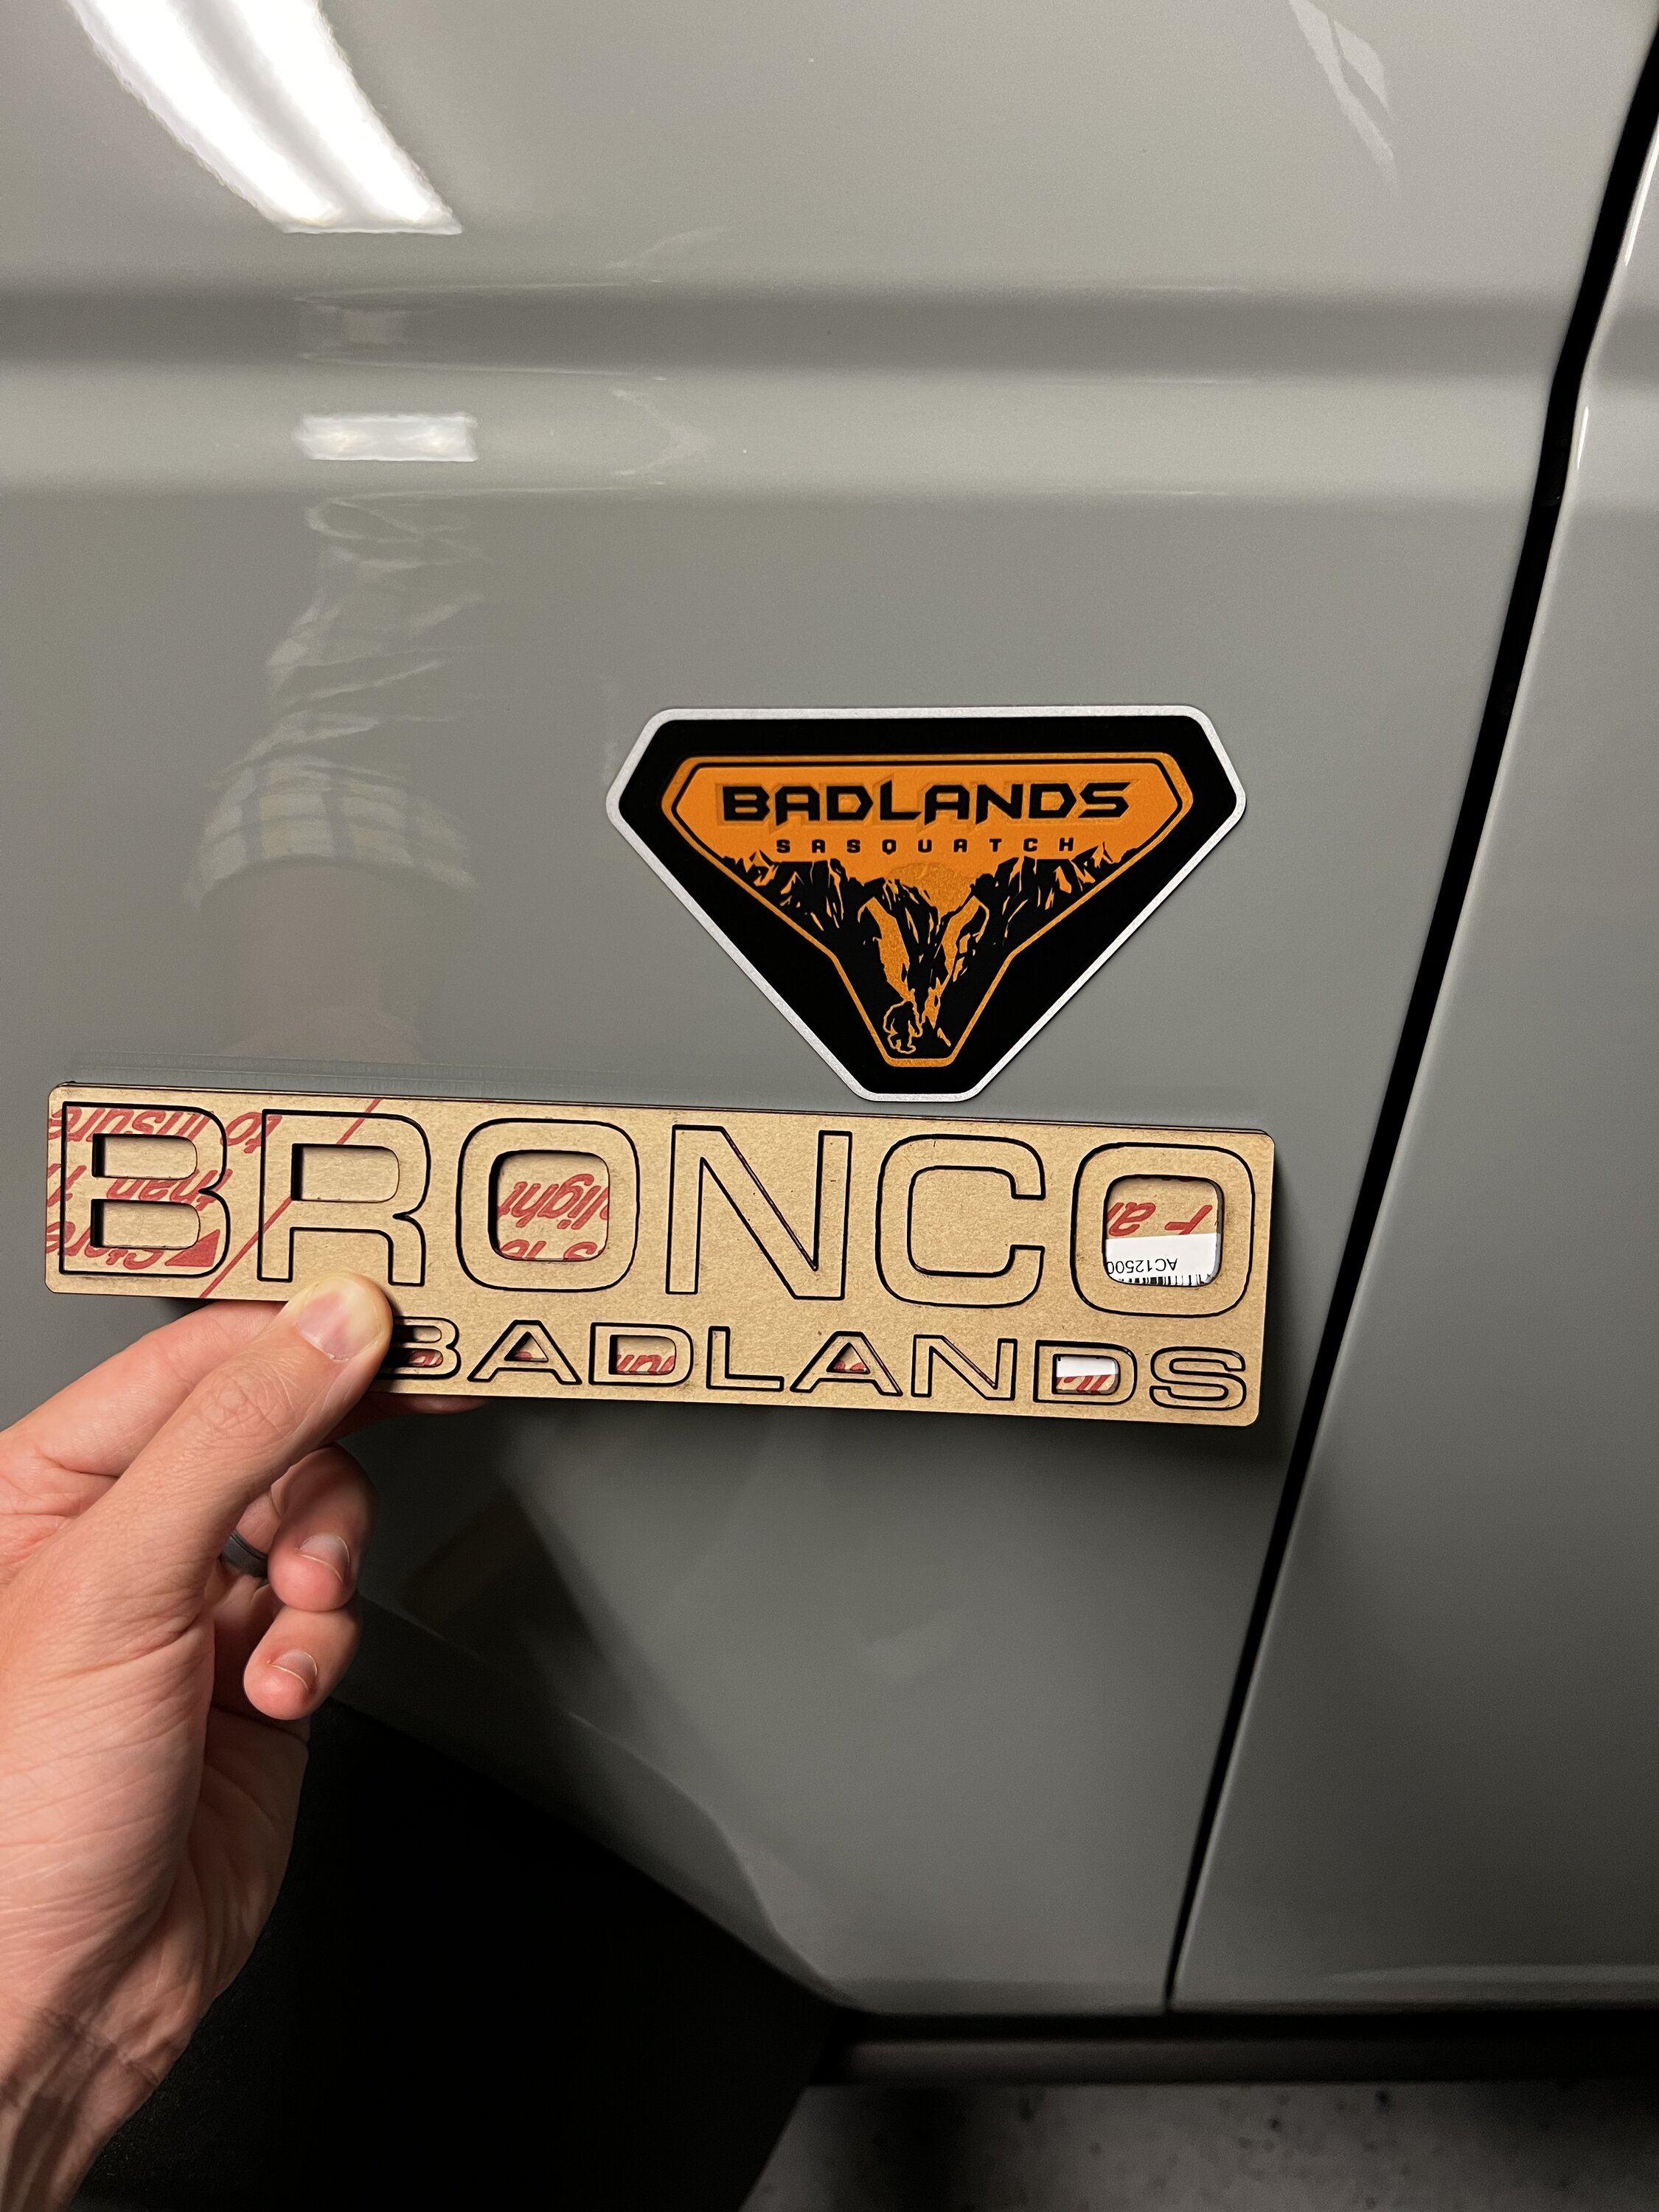 Ford Bronco Custom "BRONCO BADLANDS" Badges - '90s Old Body Style by No Shame Garage 2B3FE378-AEA6-497E-9A7E-5BAAF929E0E2